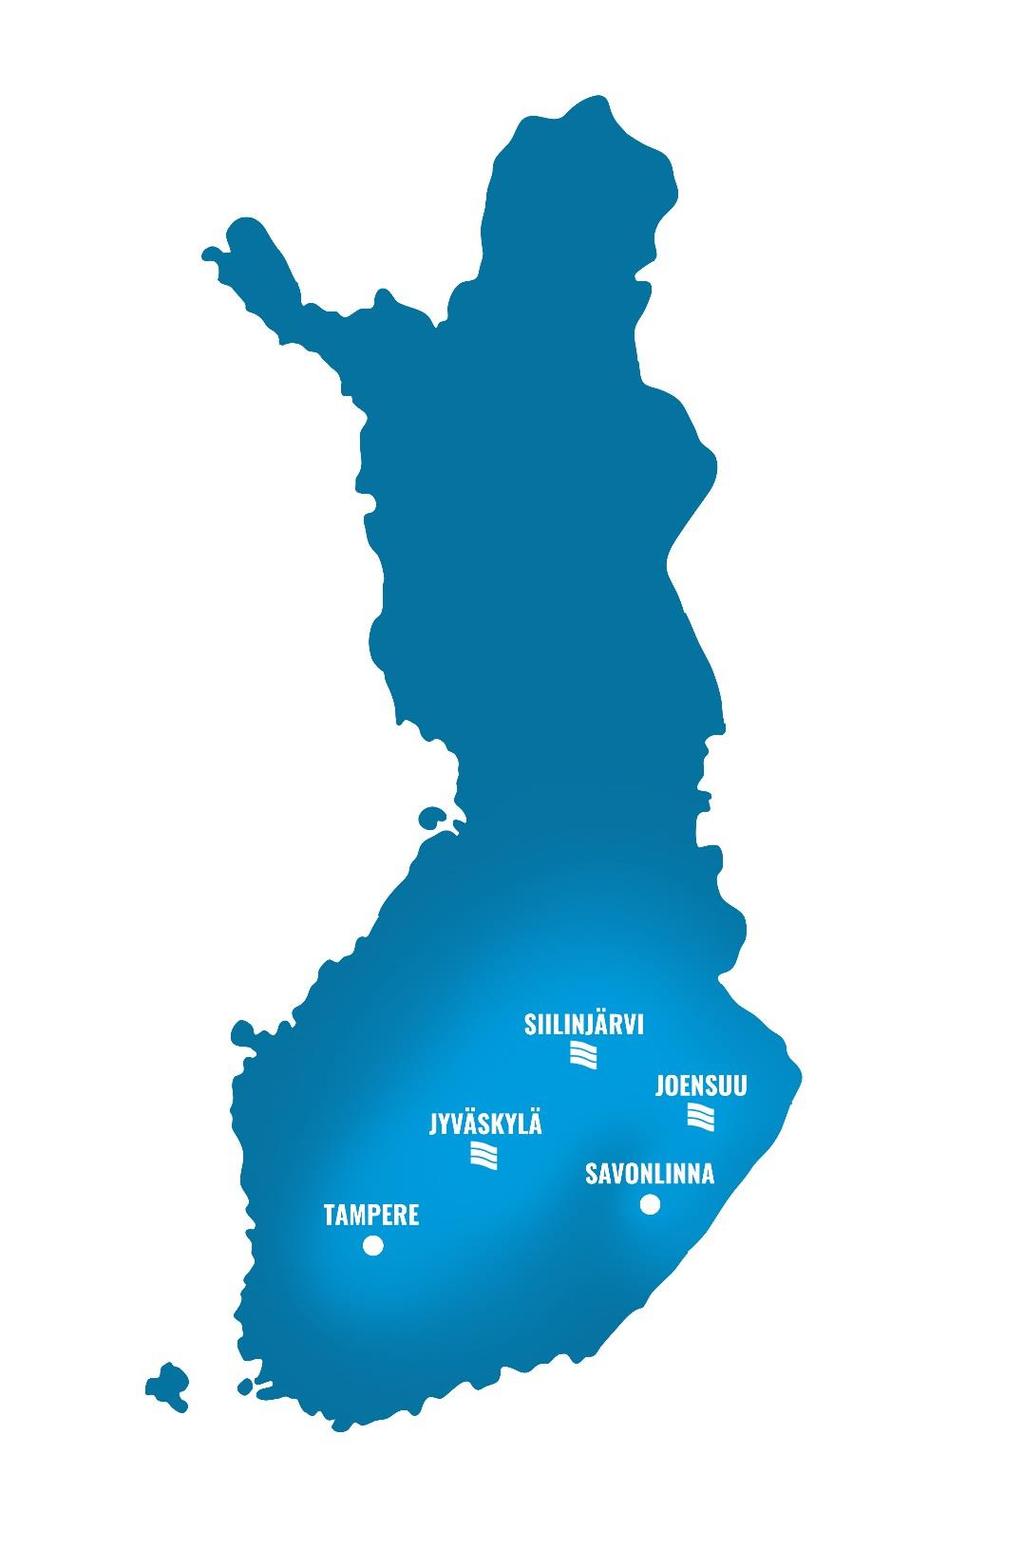 Sakupe tänään Tuotantolaitokset Siilinjärvellä, Joensuussa ja Jyväskylässä Toimialueen ytimessä viisi maakuntaa Tuotantovolyymi 9,5 Mkg (ennuste 2018) Liikevaihto 22,1 M (ennuste 2018) Henkilöstöä